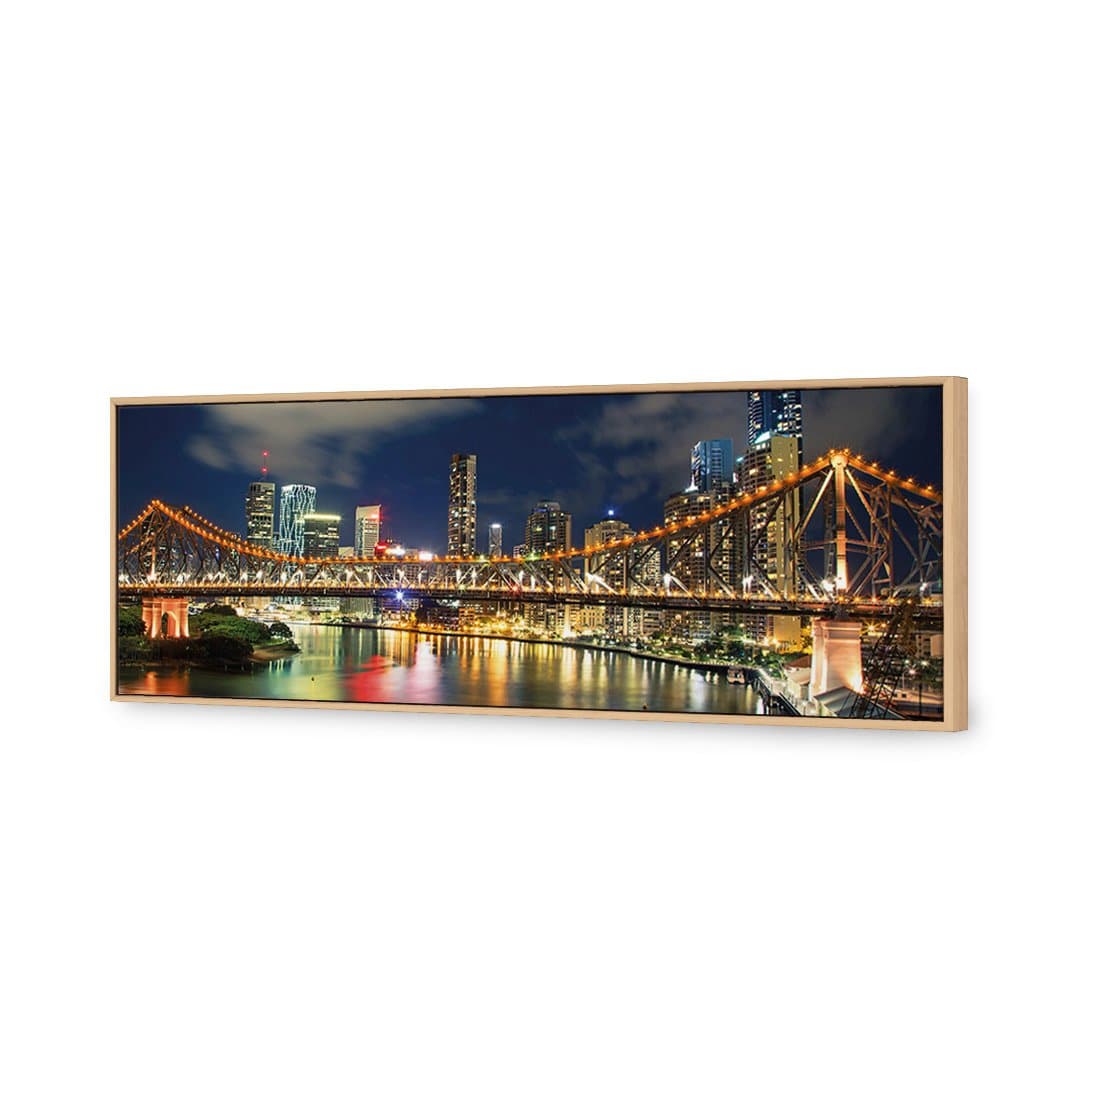 Story Bridge 2015 Canvas Art-Canvas-Wall Art Designs-60x20cm-Canvas - Oak Frame-Wall Art Designs